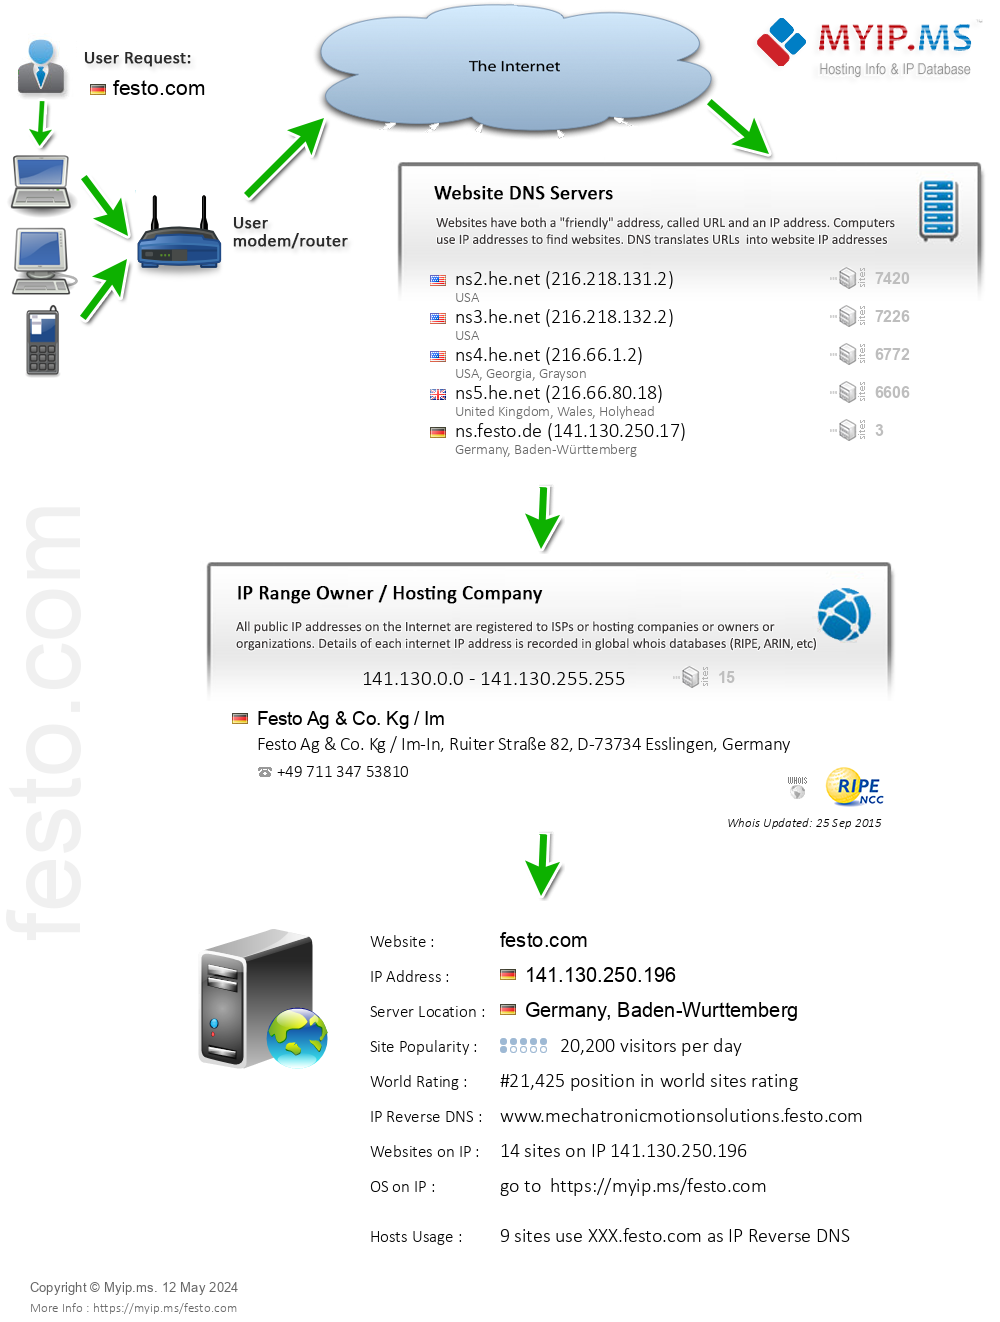 Festo.com - Website Hosting Visual IP Diagram